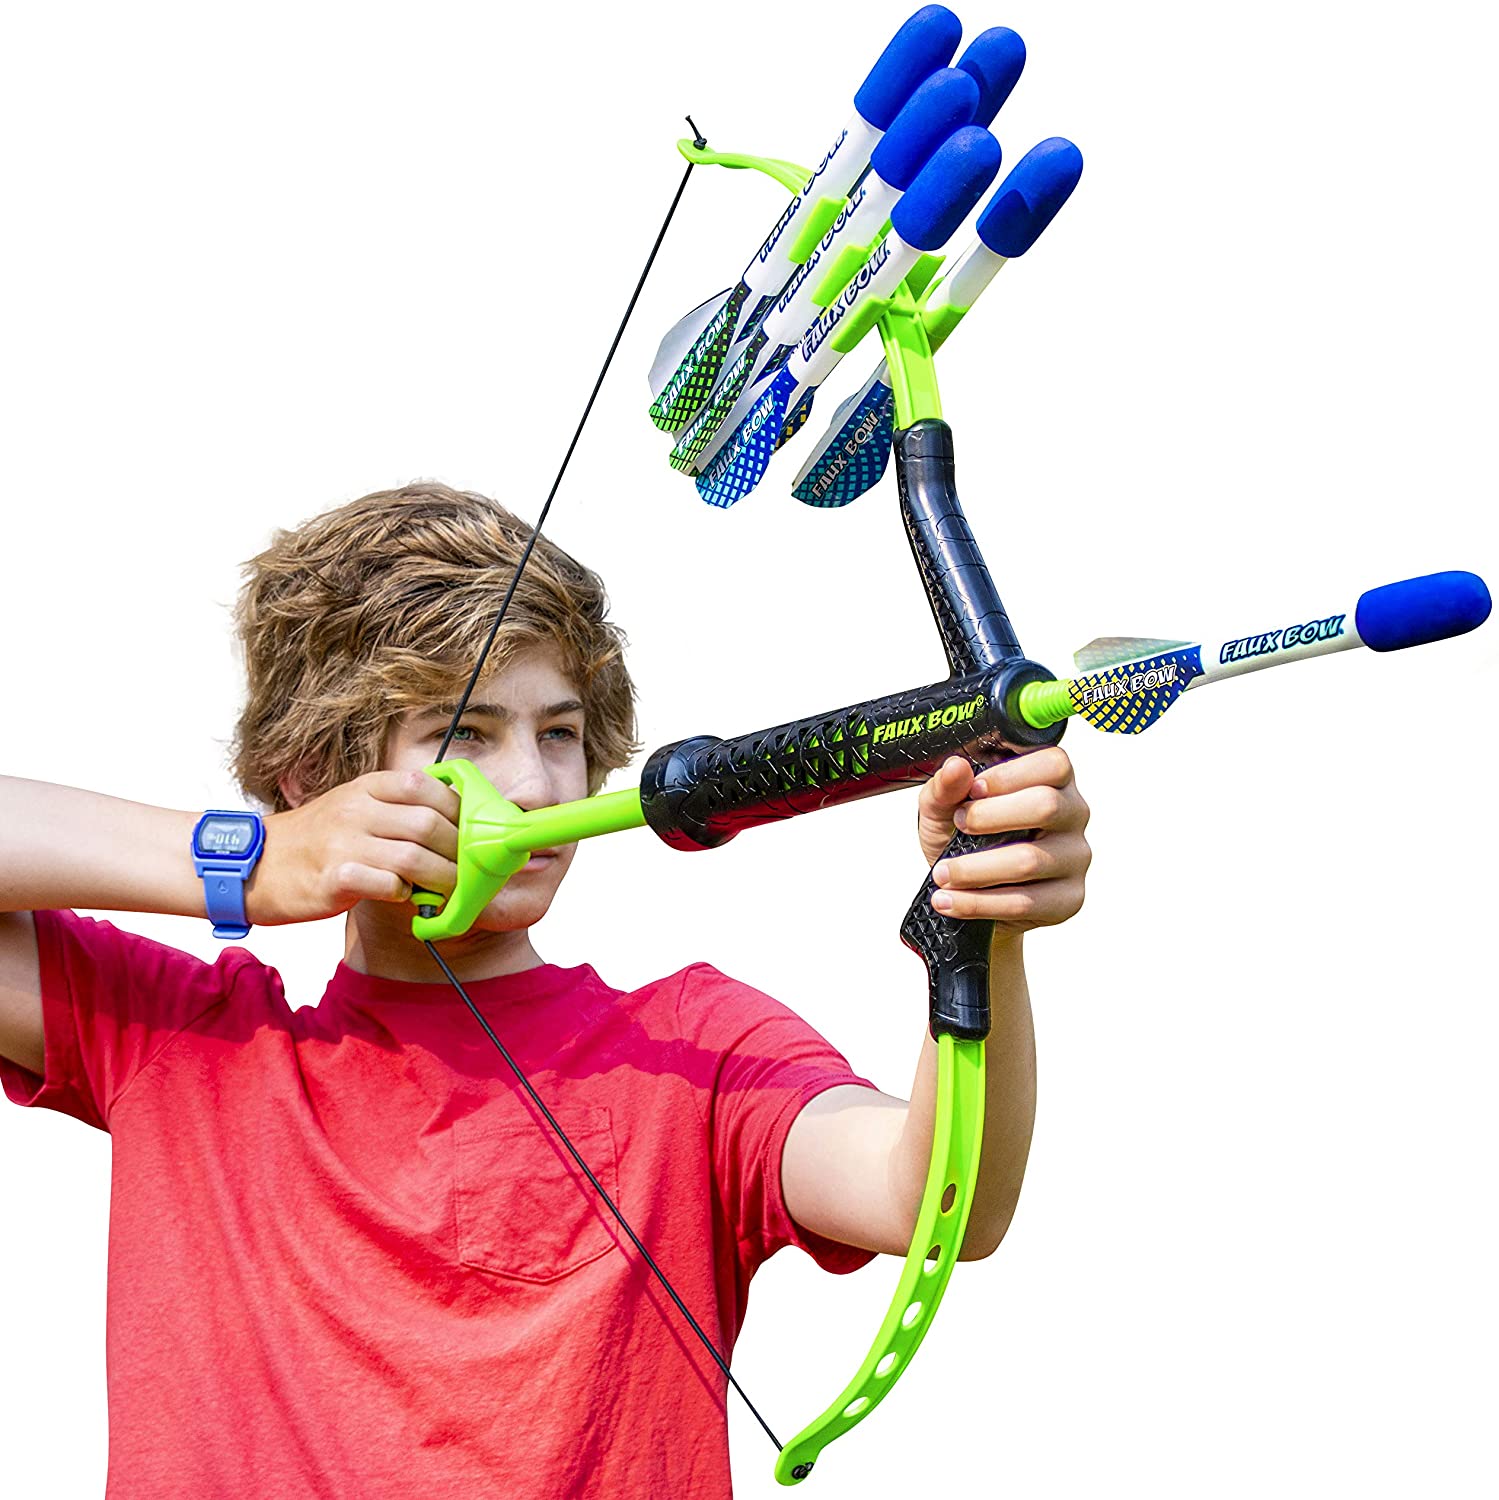 FAUX BOW Archery Set With Foam Bow & Arrow